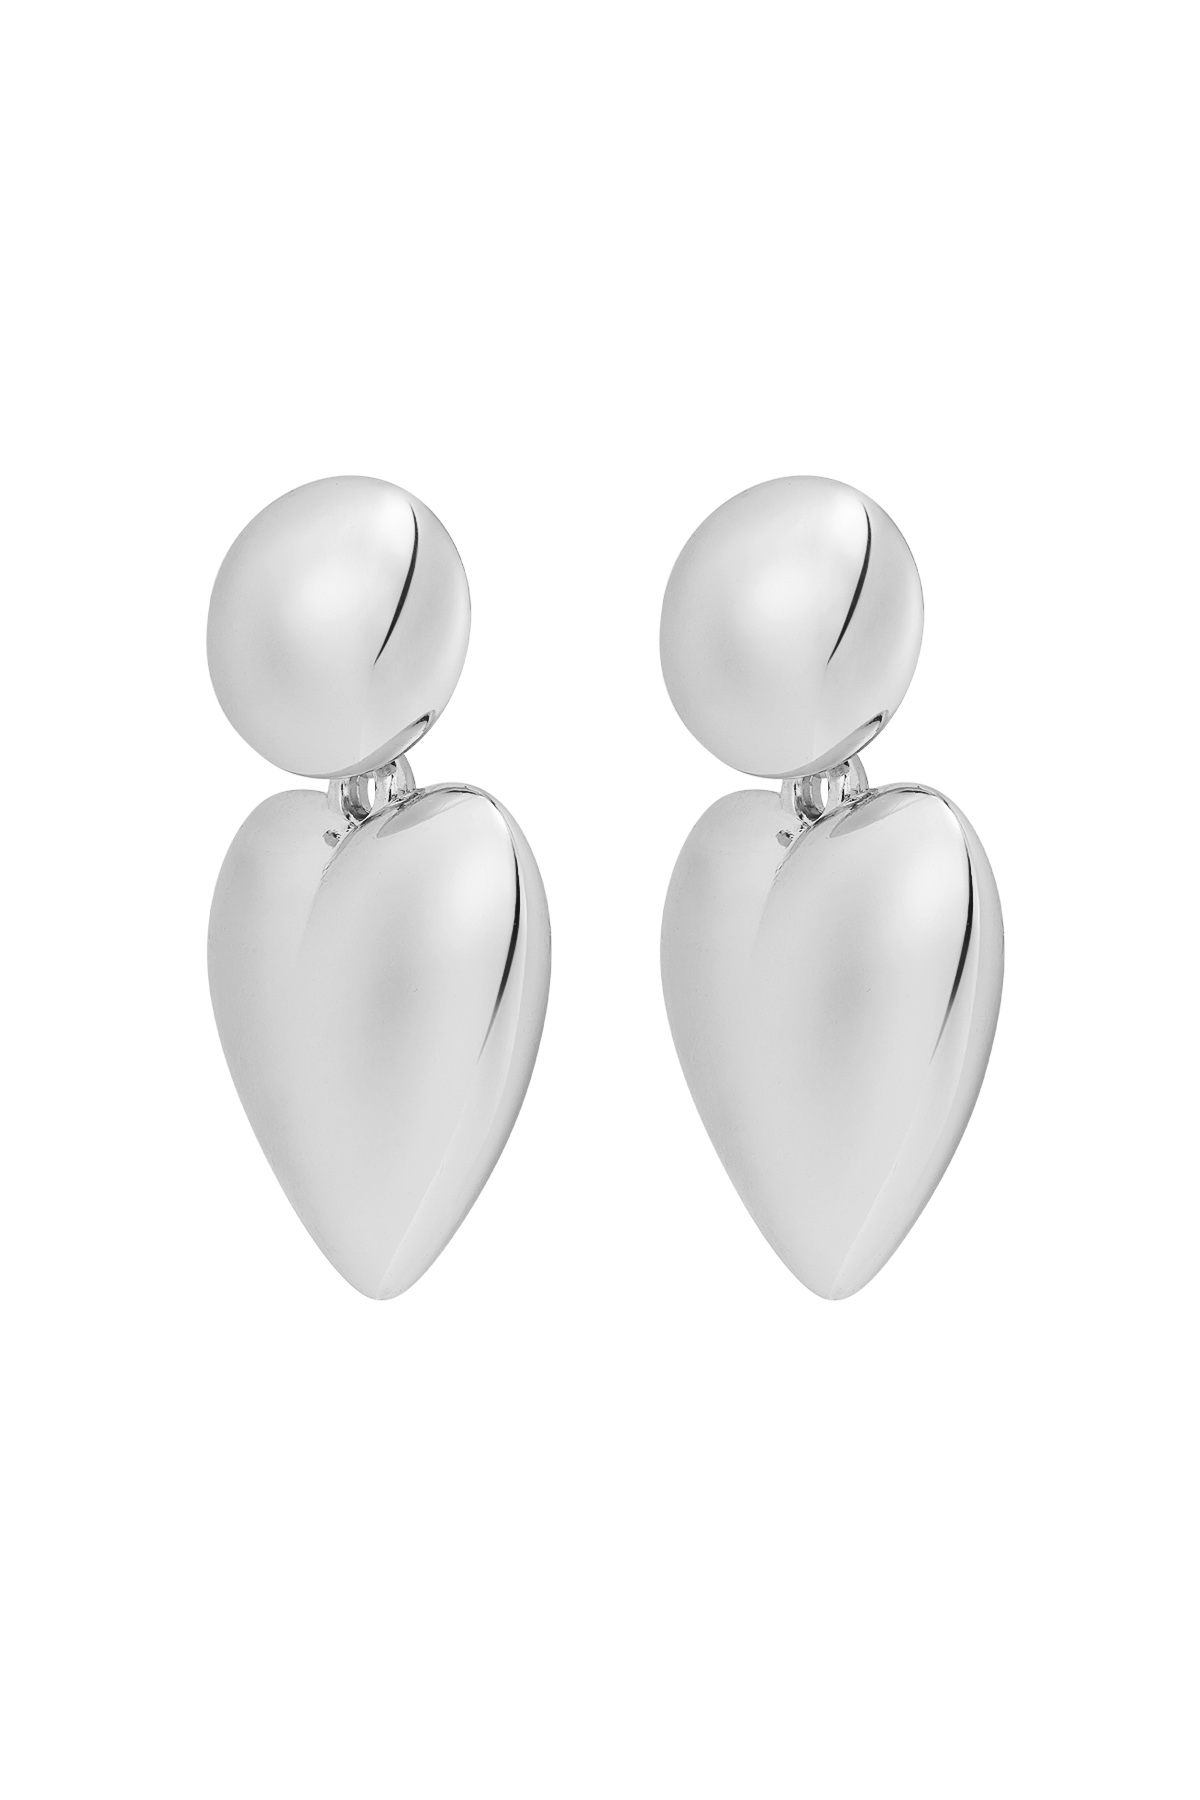 Earrings heart with dot metal - silver